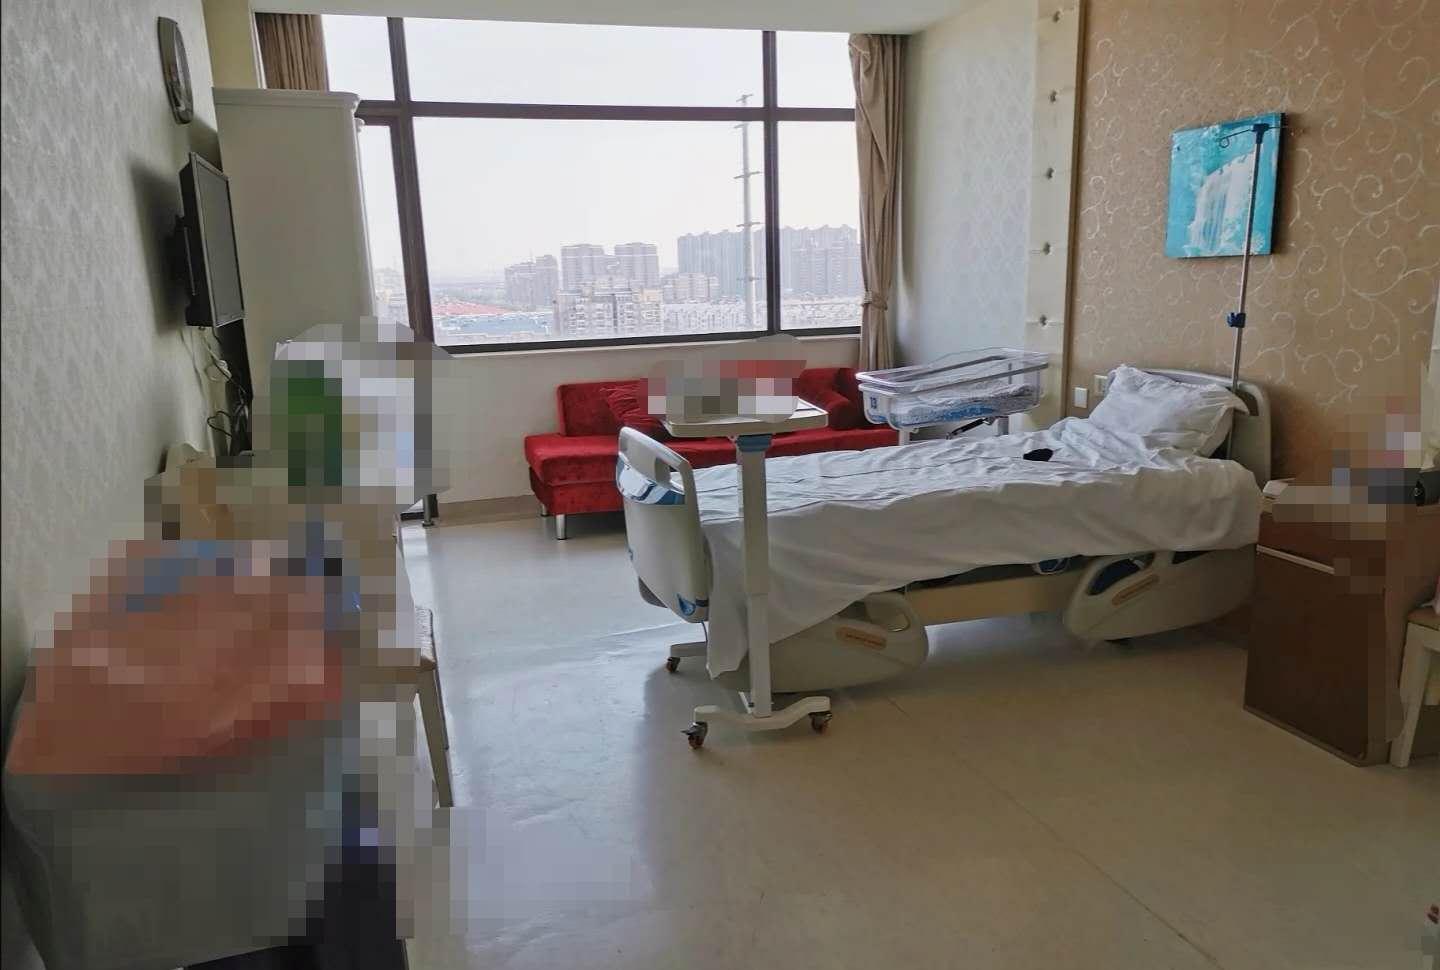 上海所有产科医院病房照片及价格 - 知乎